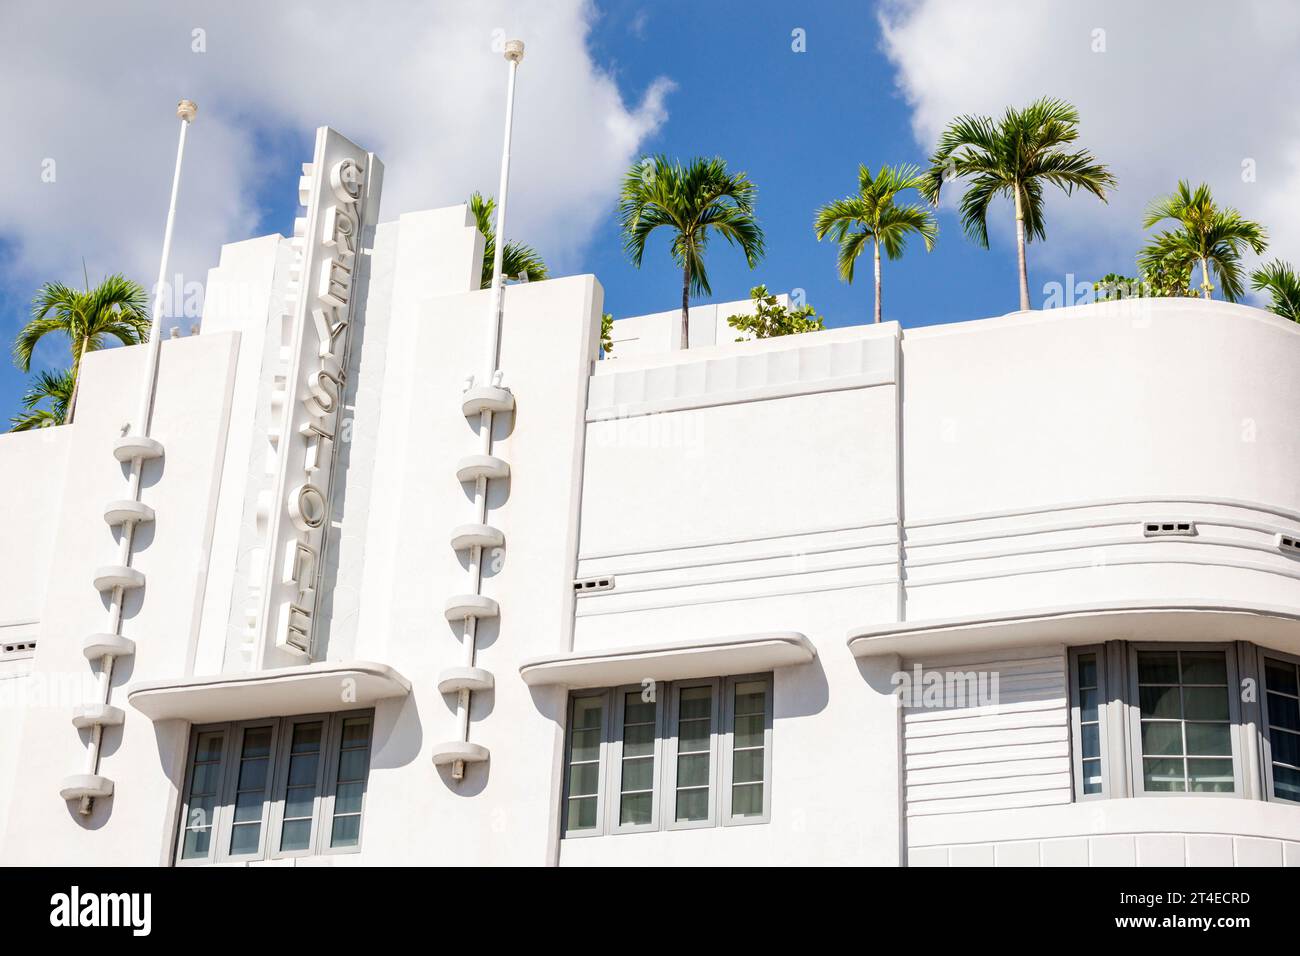 Miami Beach Florida, Außenfassade, Gebäude Vordereingang Hotel, Collins Avenue, Hotel Greystone Schild Art Deco Stil Architektur, Hotels Motels Busin Stockfoto